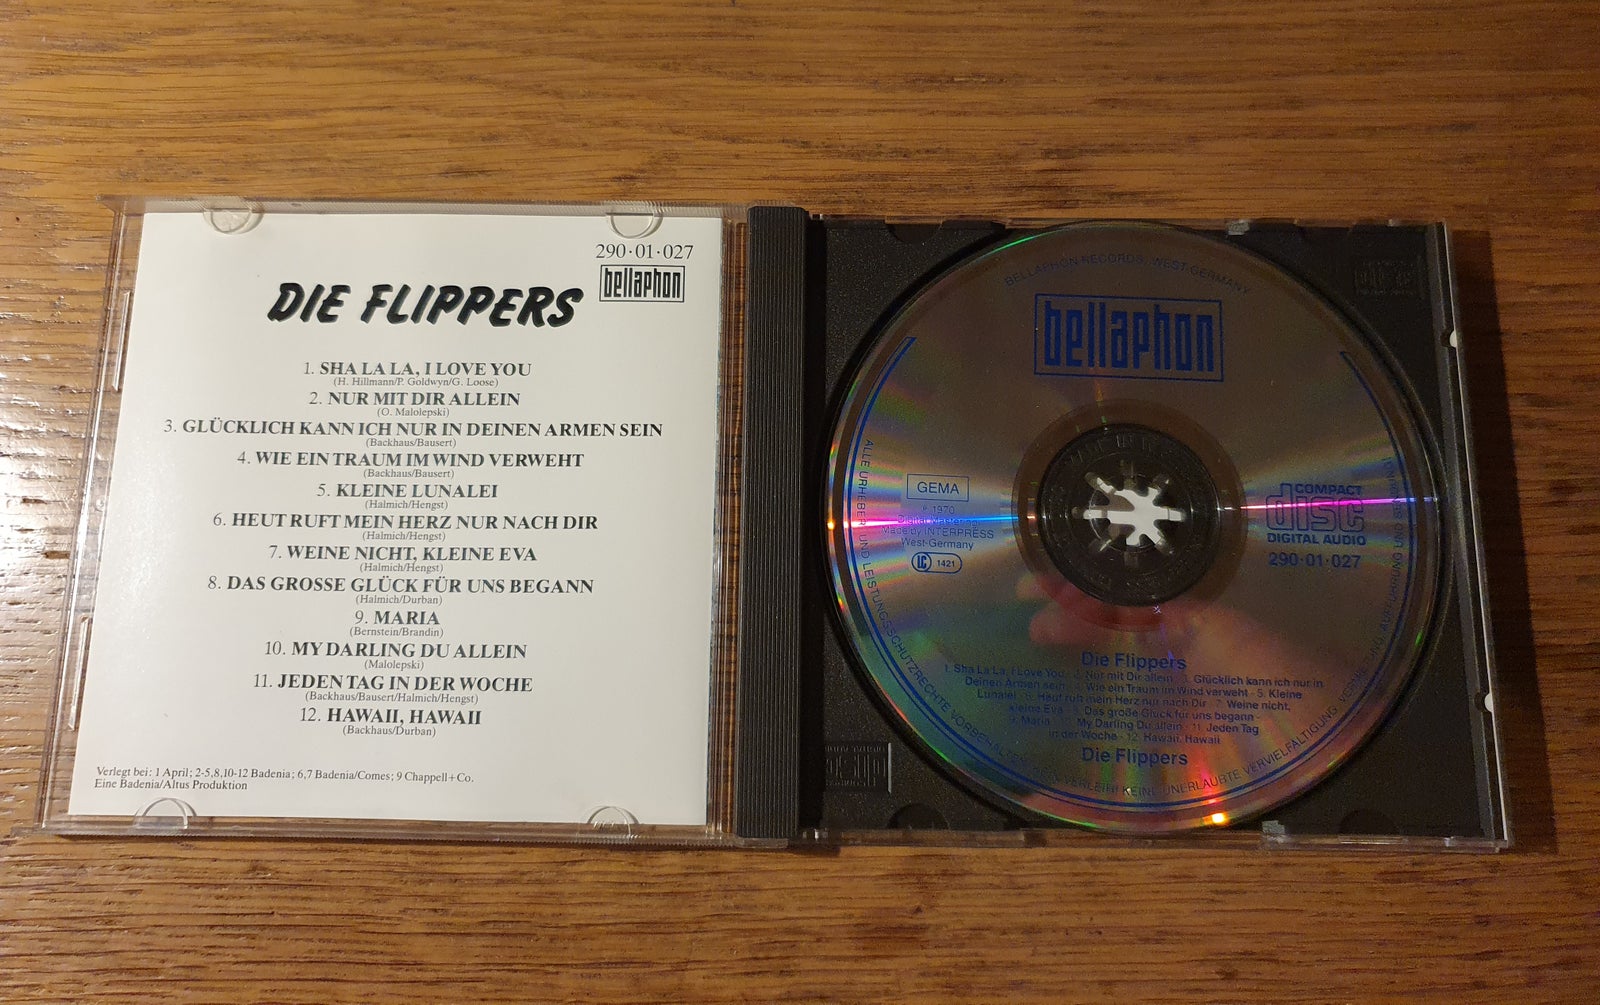 Die Flippers: Die Flippers, andet